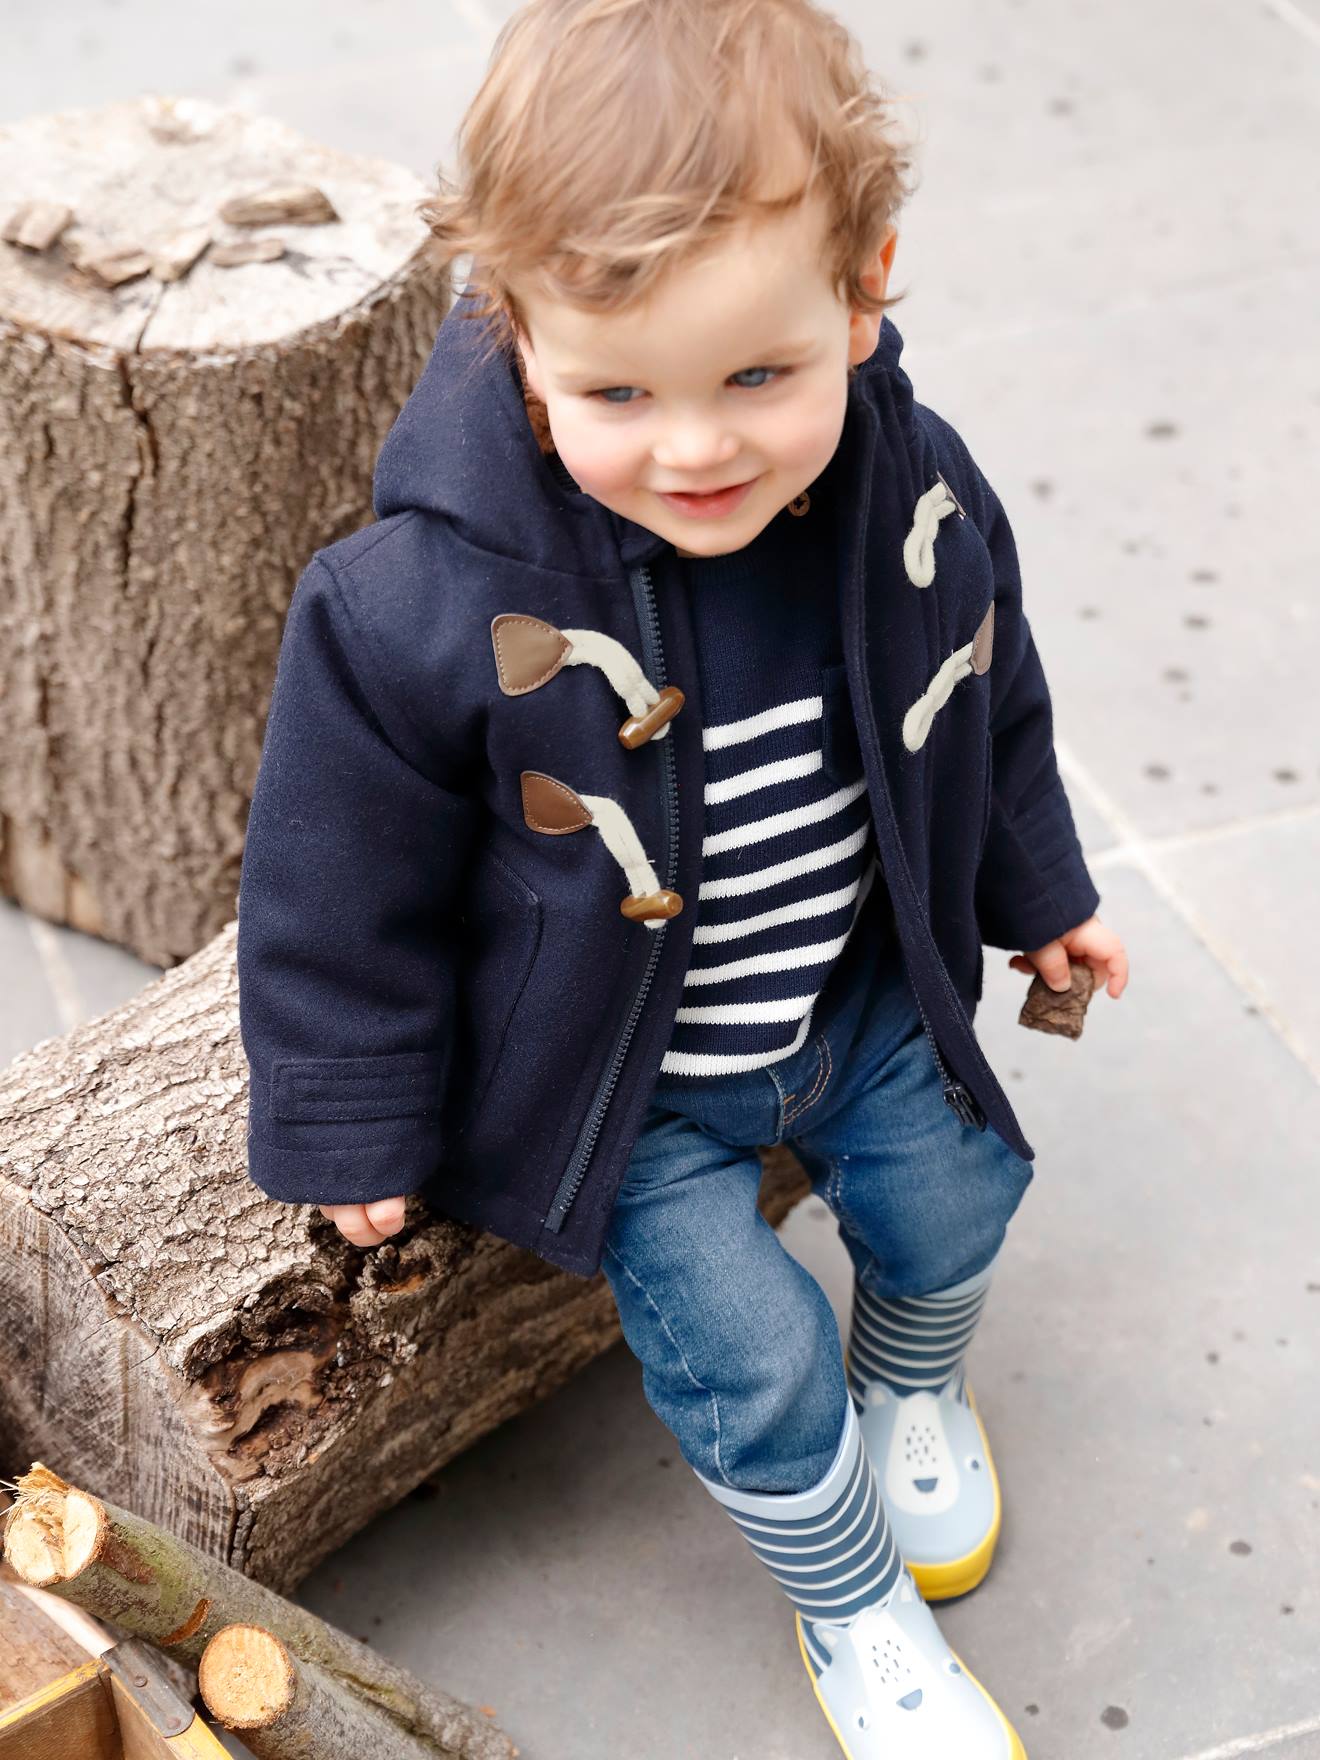 Doudoune garçon - Manteaux chauds pour enfants - vertbaudet